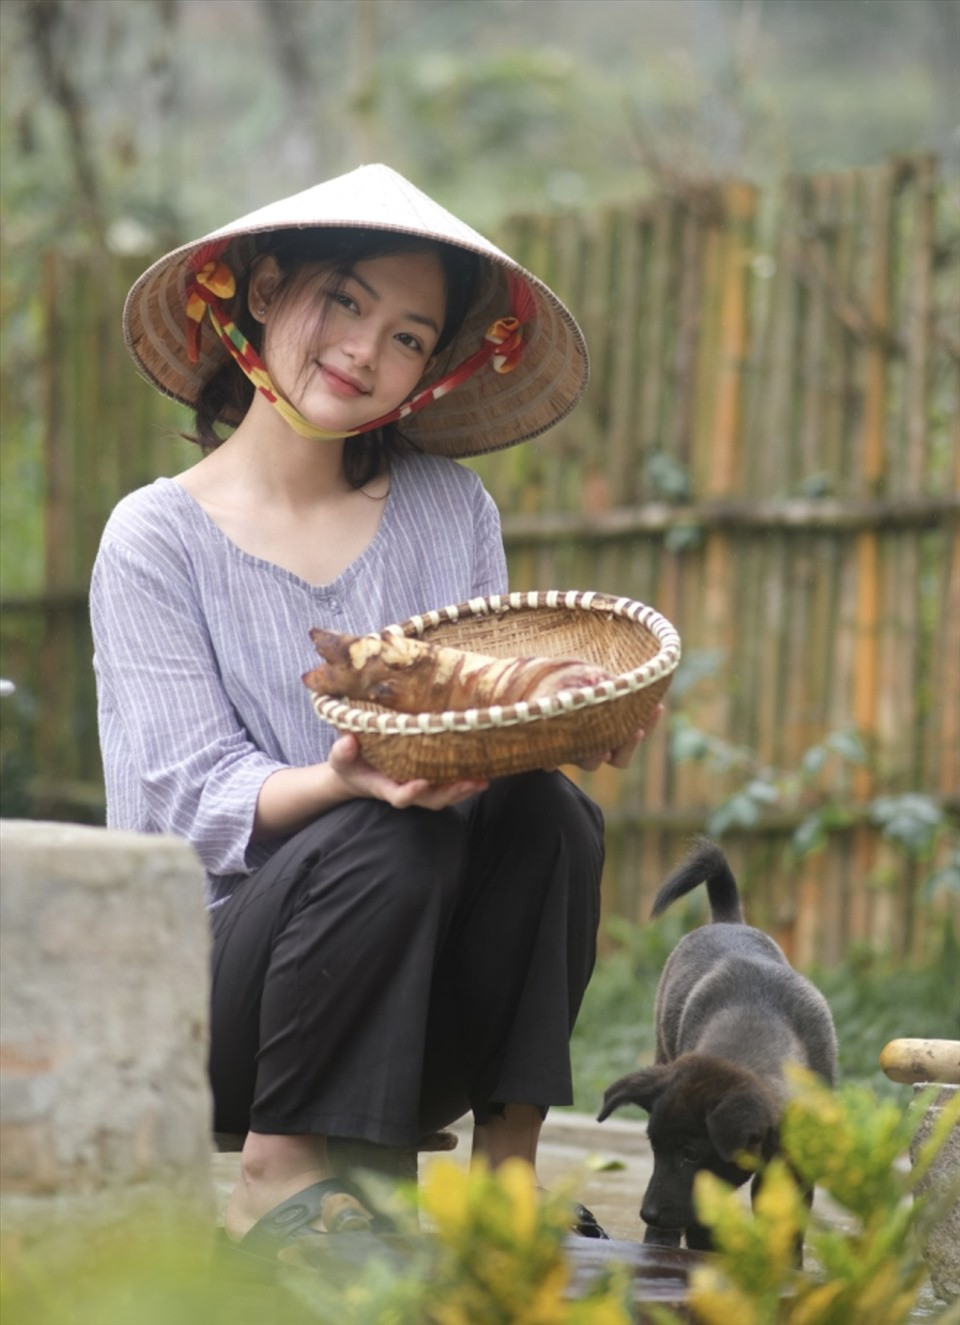 Ngôi làng nổi danh nhiều gái đẹp nhất Việt Nam, toàn hậu duệ của cung tần mỹ nữ xưa, nghiêng nước nghiêng thành - ảnh 1